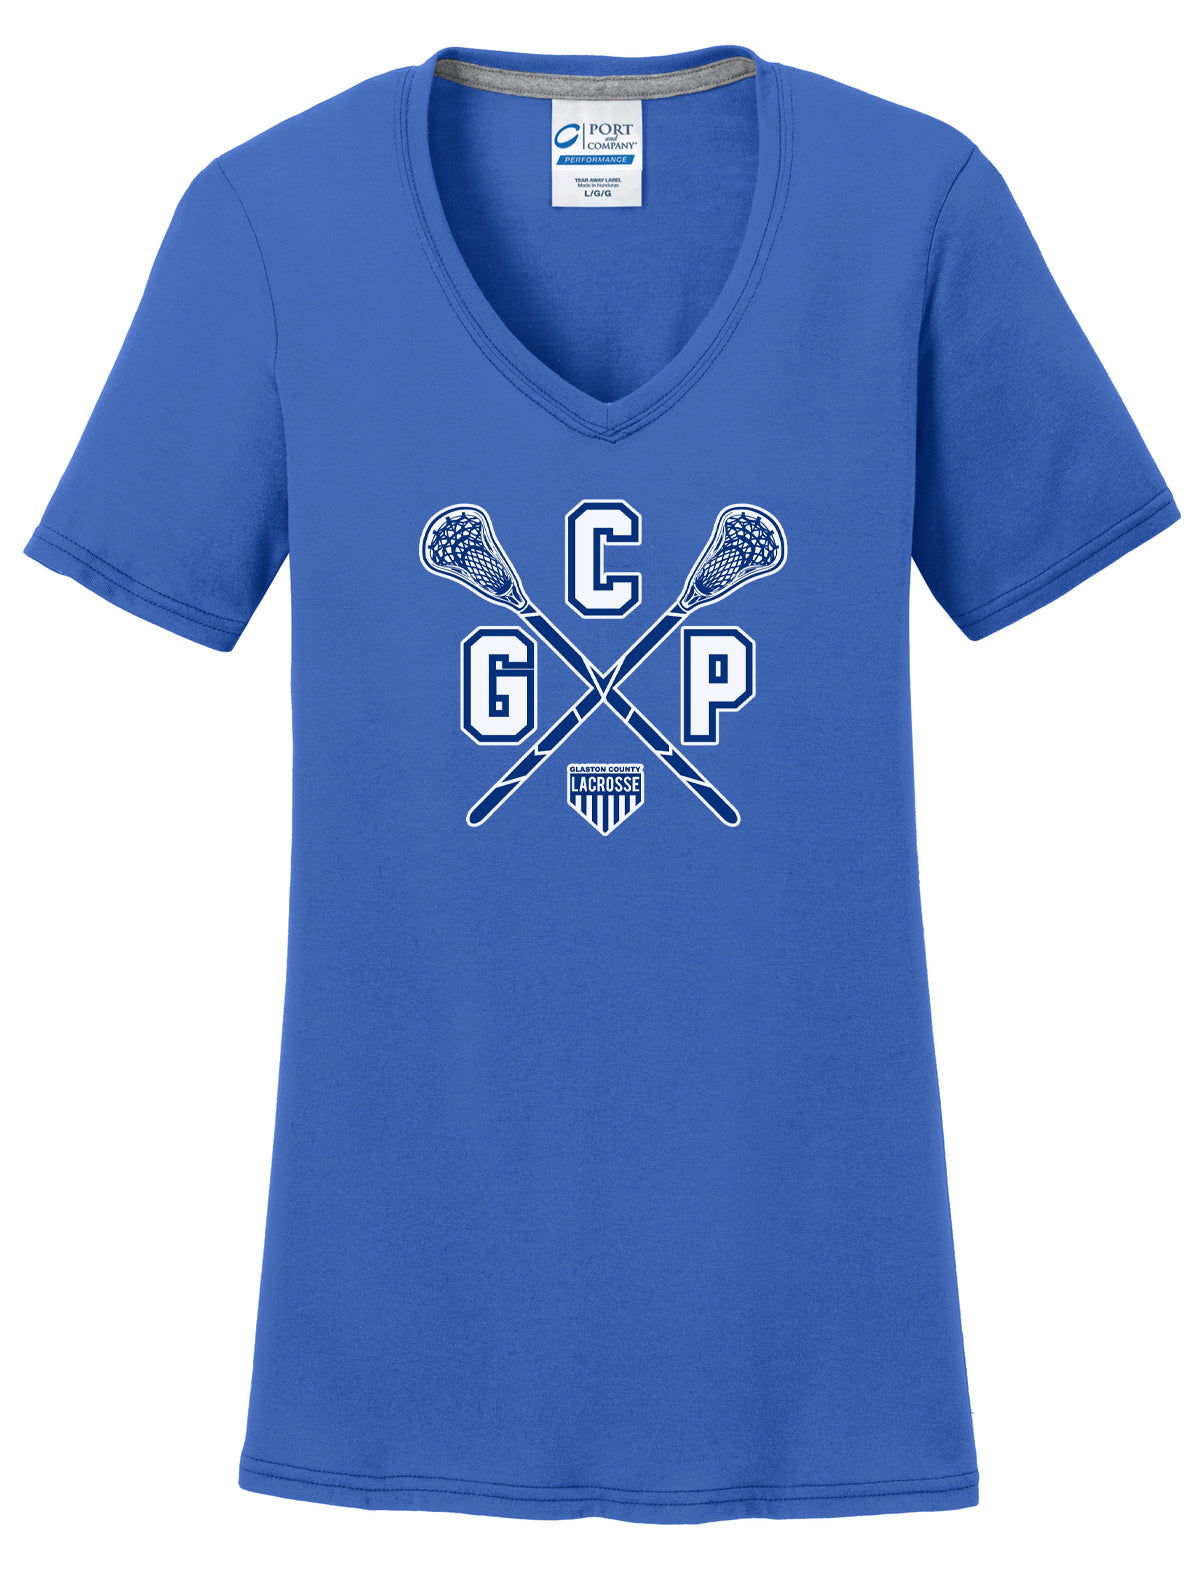 GCP Lacrosse Women's Royal T-Shirt